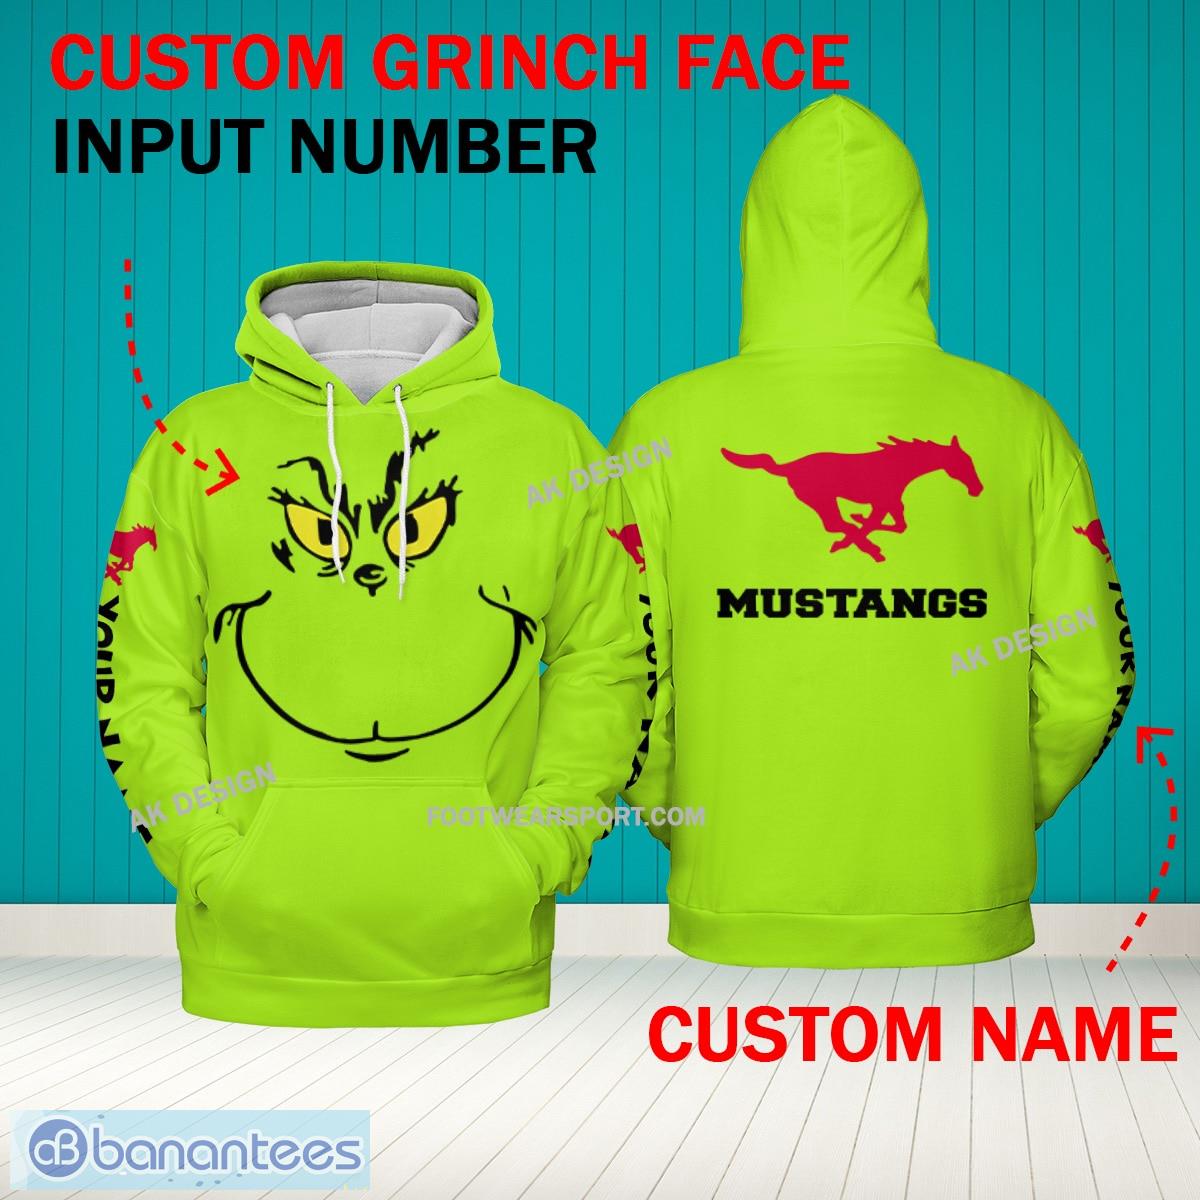 Grinch Face SMU Mustangs 3D Hoodie, Zip Hoodie, Sweater Green AOP Custom Number And Name - Grinch Face NCAA SMU Mustangs 3D Hoodie